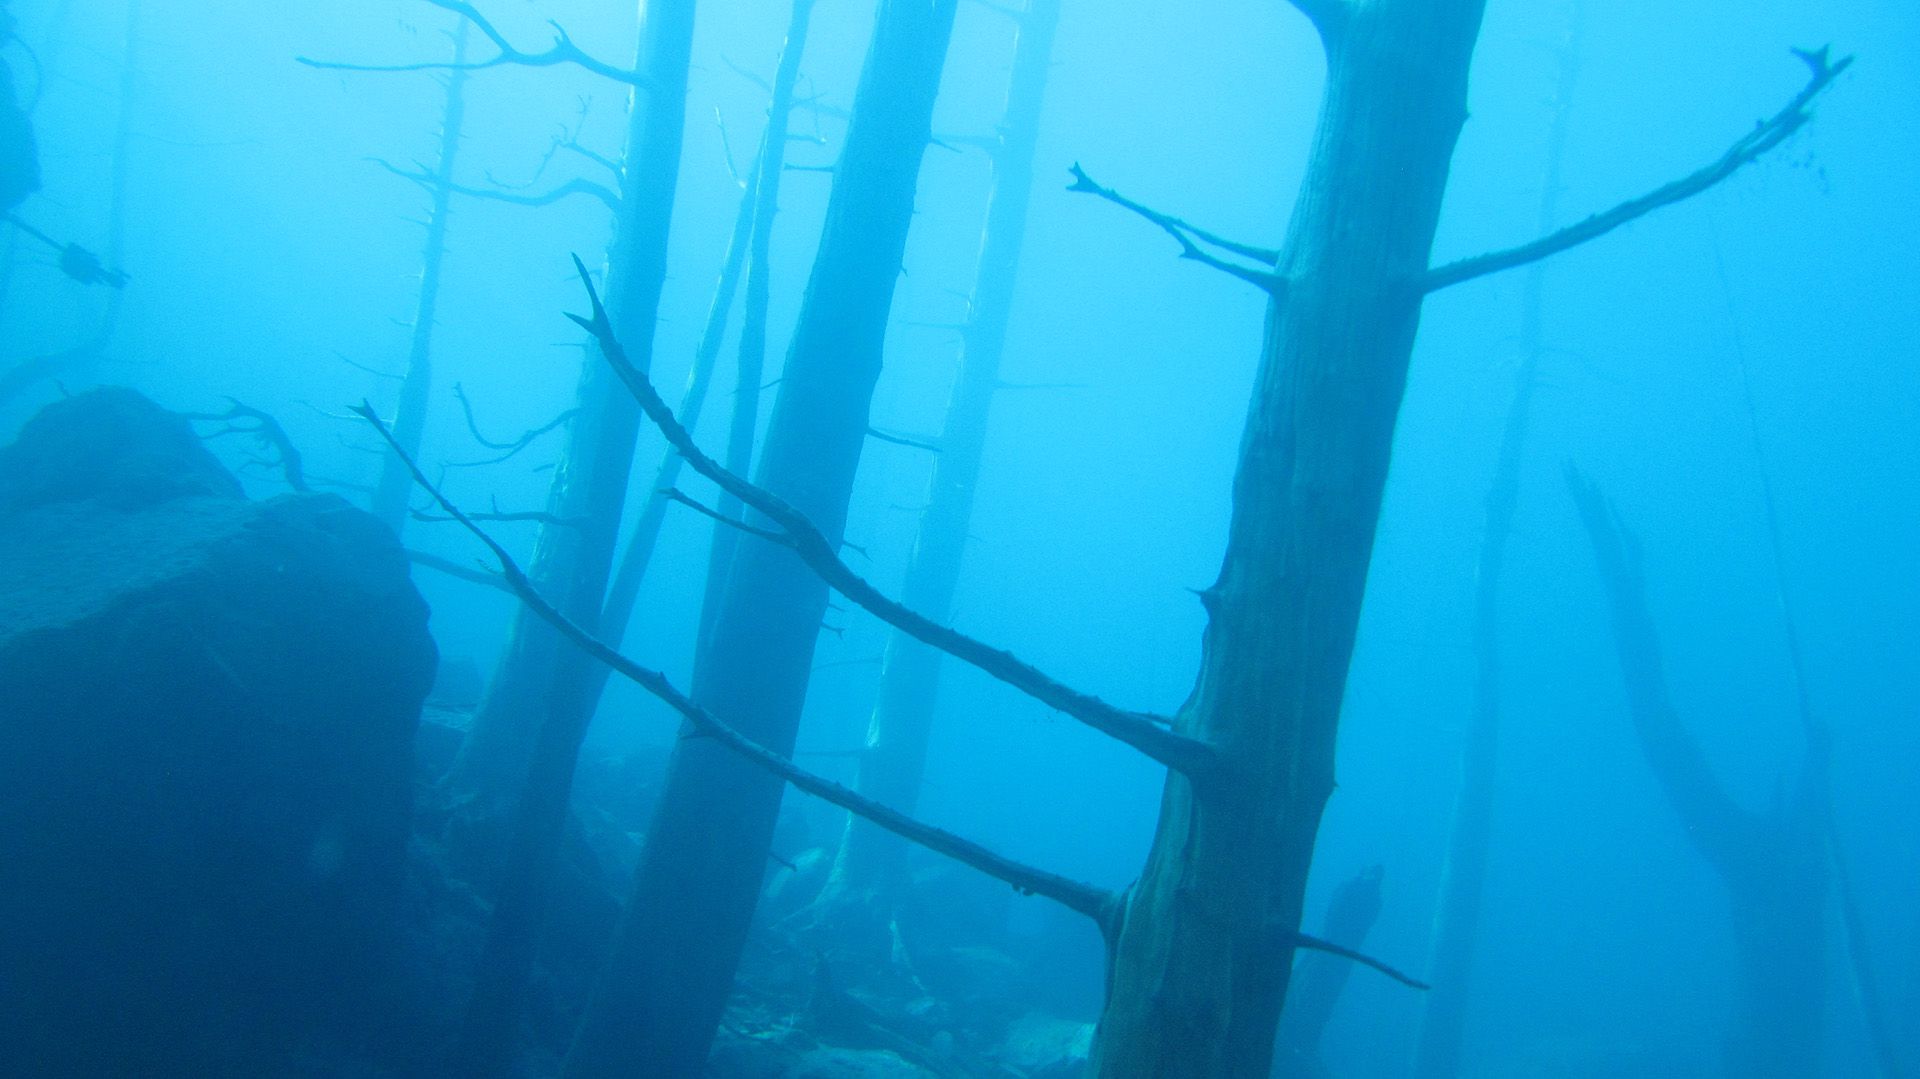 Según el estudio, algunos de los árboles del “Bosque Sumergido” quedaron unos 15 metros por debajo del agua del lago (Shutterstock.com)